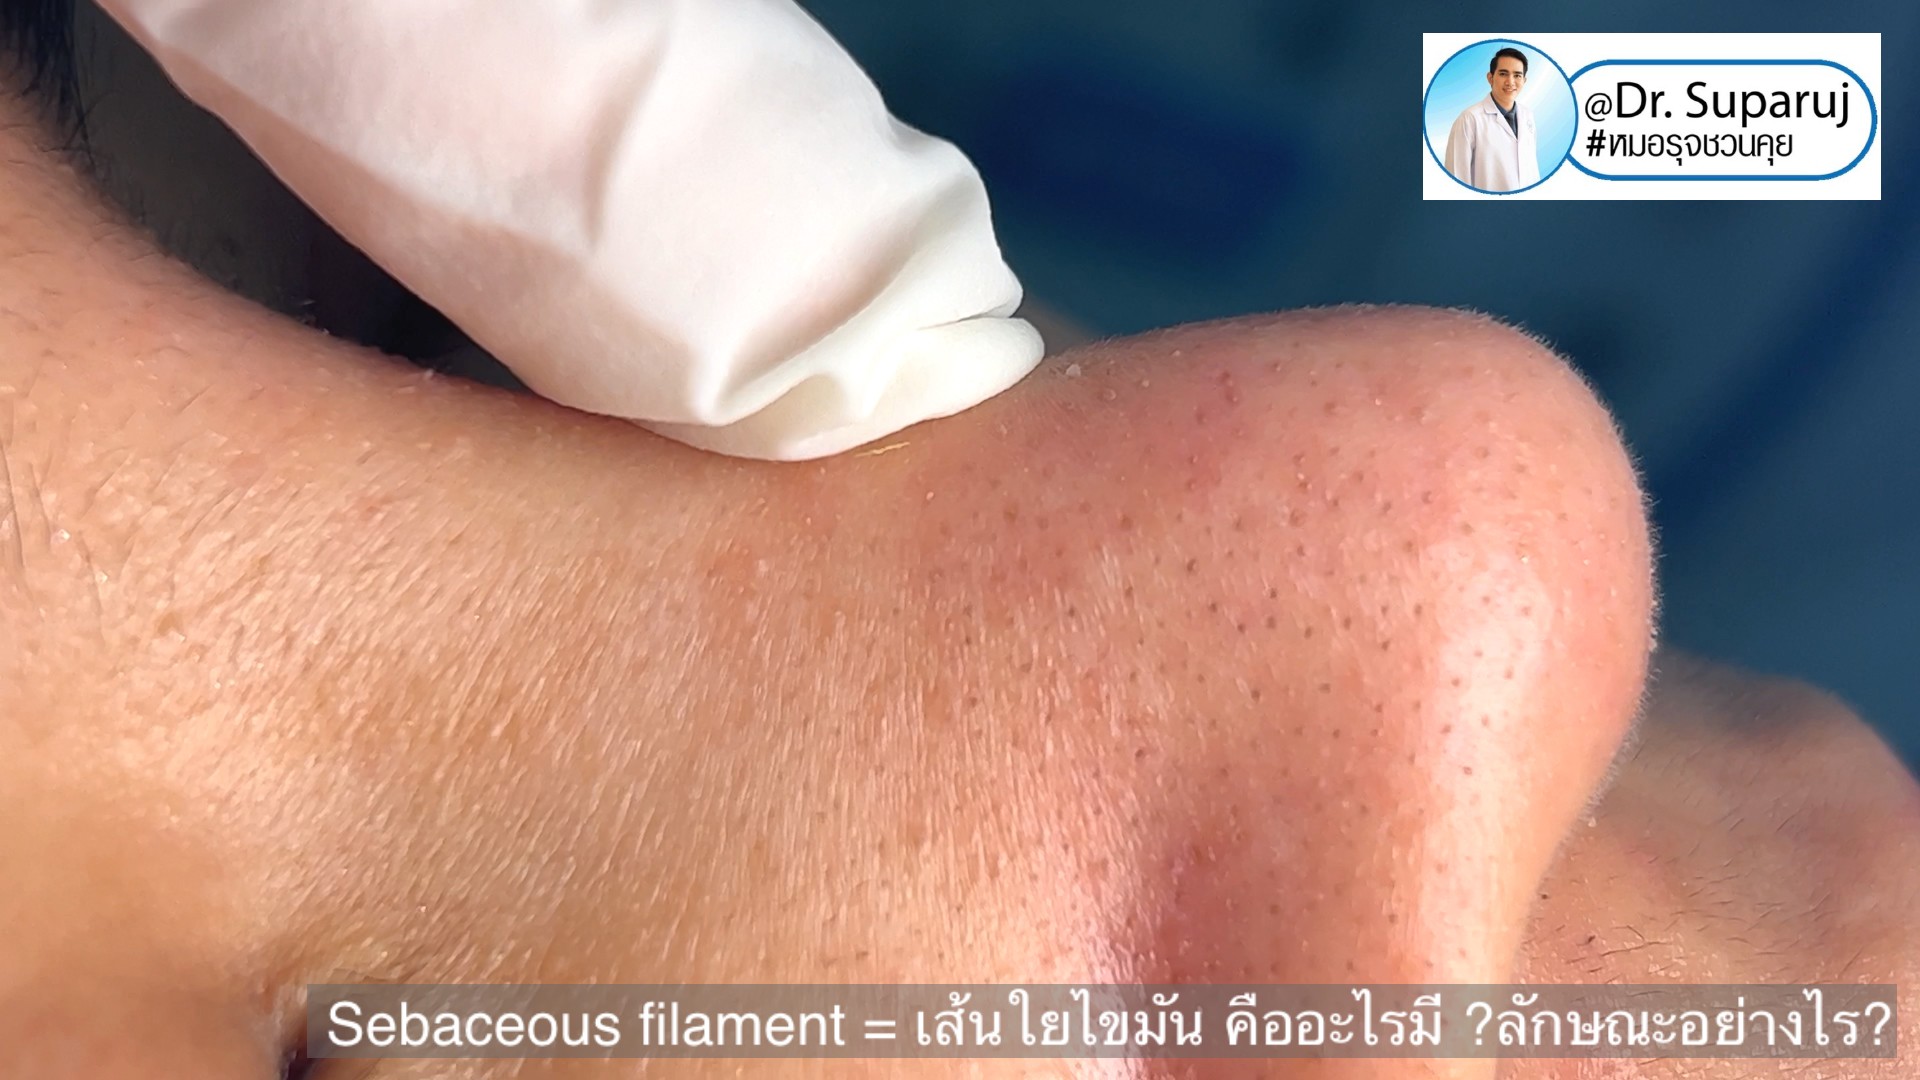 Sebaceous filament = เส้นใยไขมัน คืออะไรมี ?ลักษณะอย่างไร ? ดูแลได้อย่างไร? (คลิปเต็ม Full Clip YouTube Facebook: Dr. Suparuj ครับ